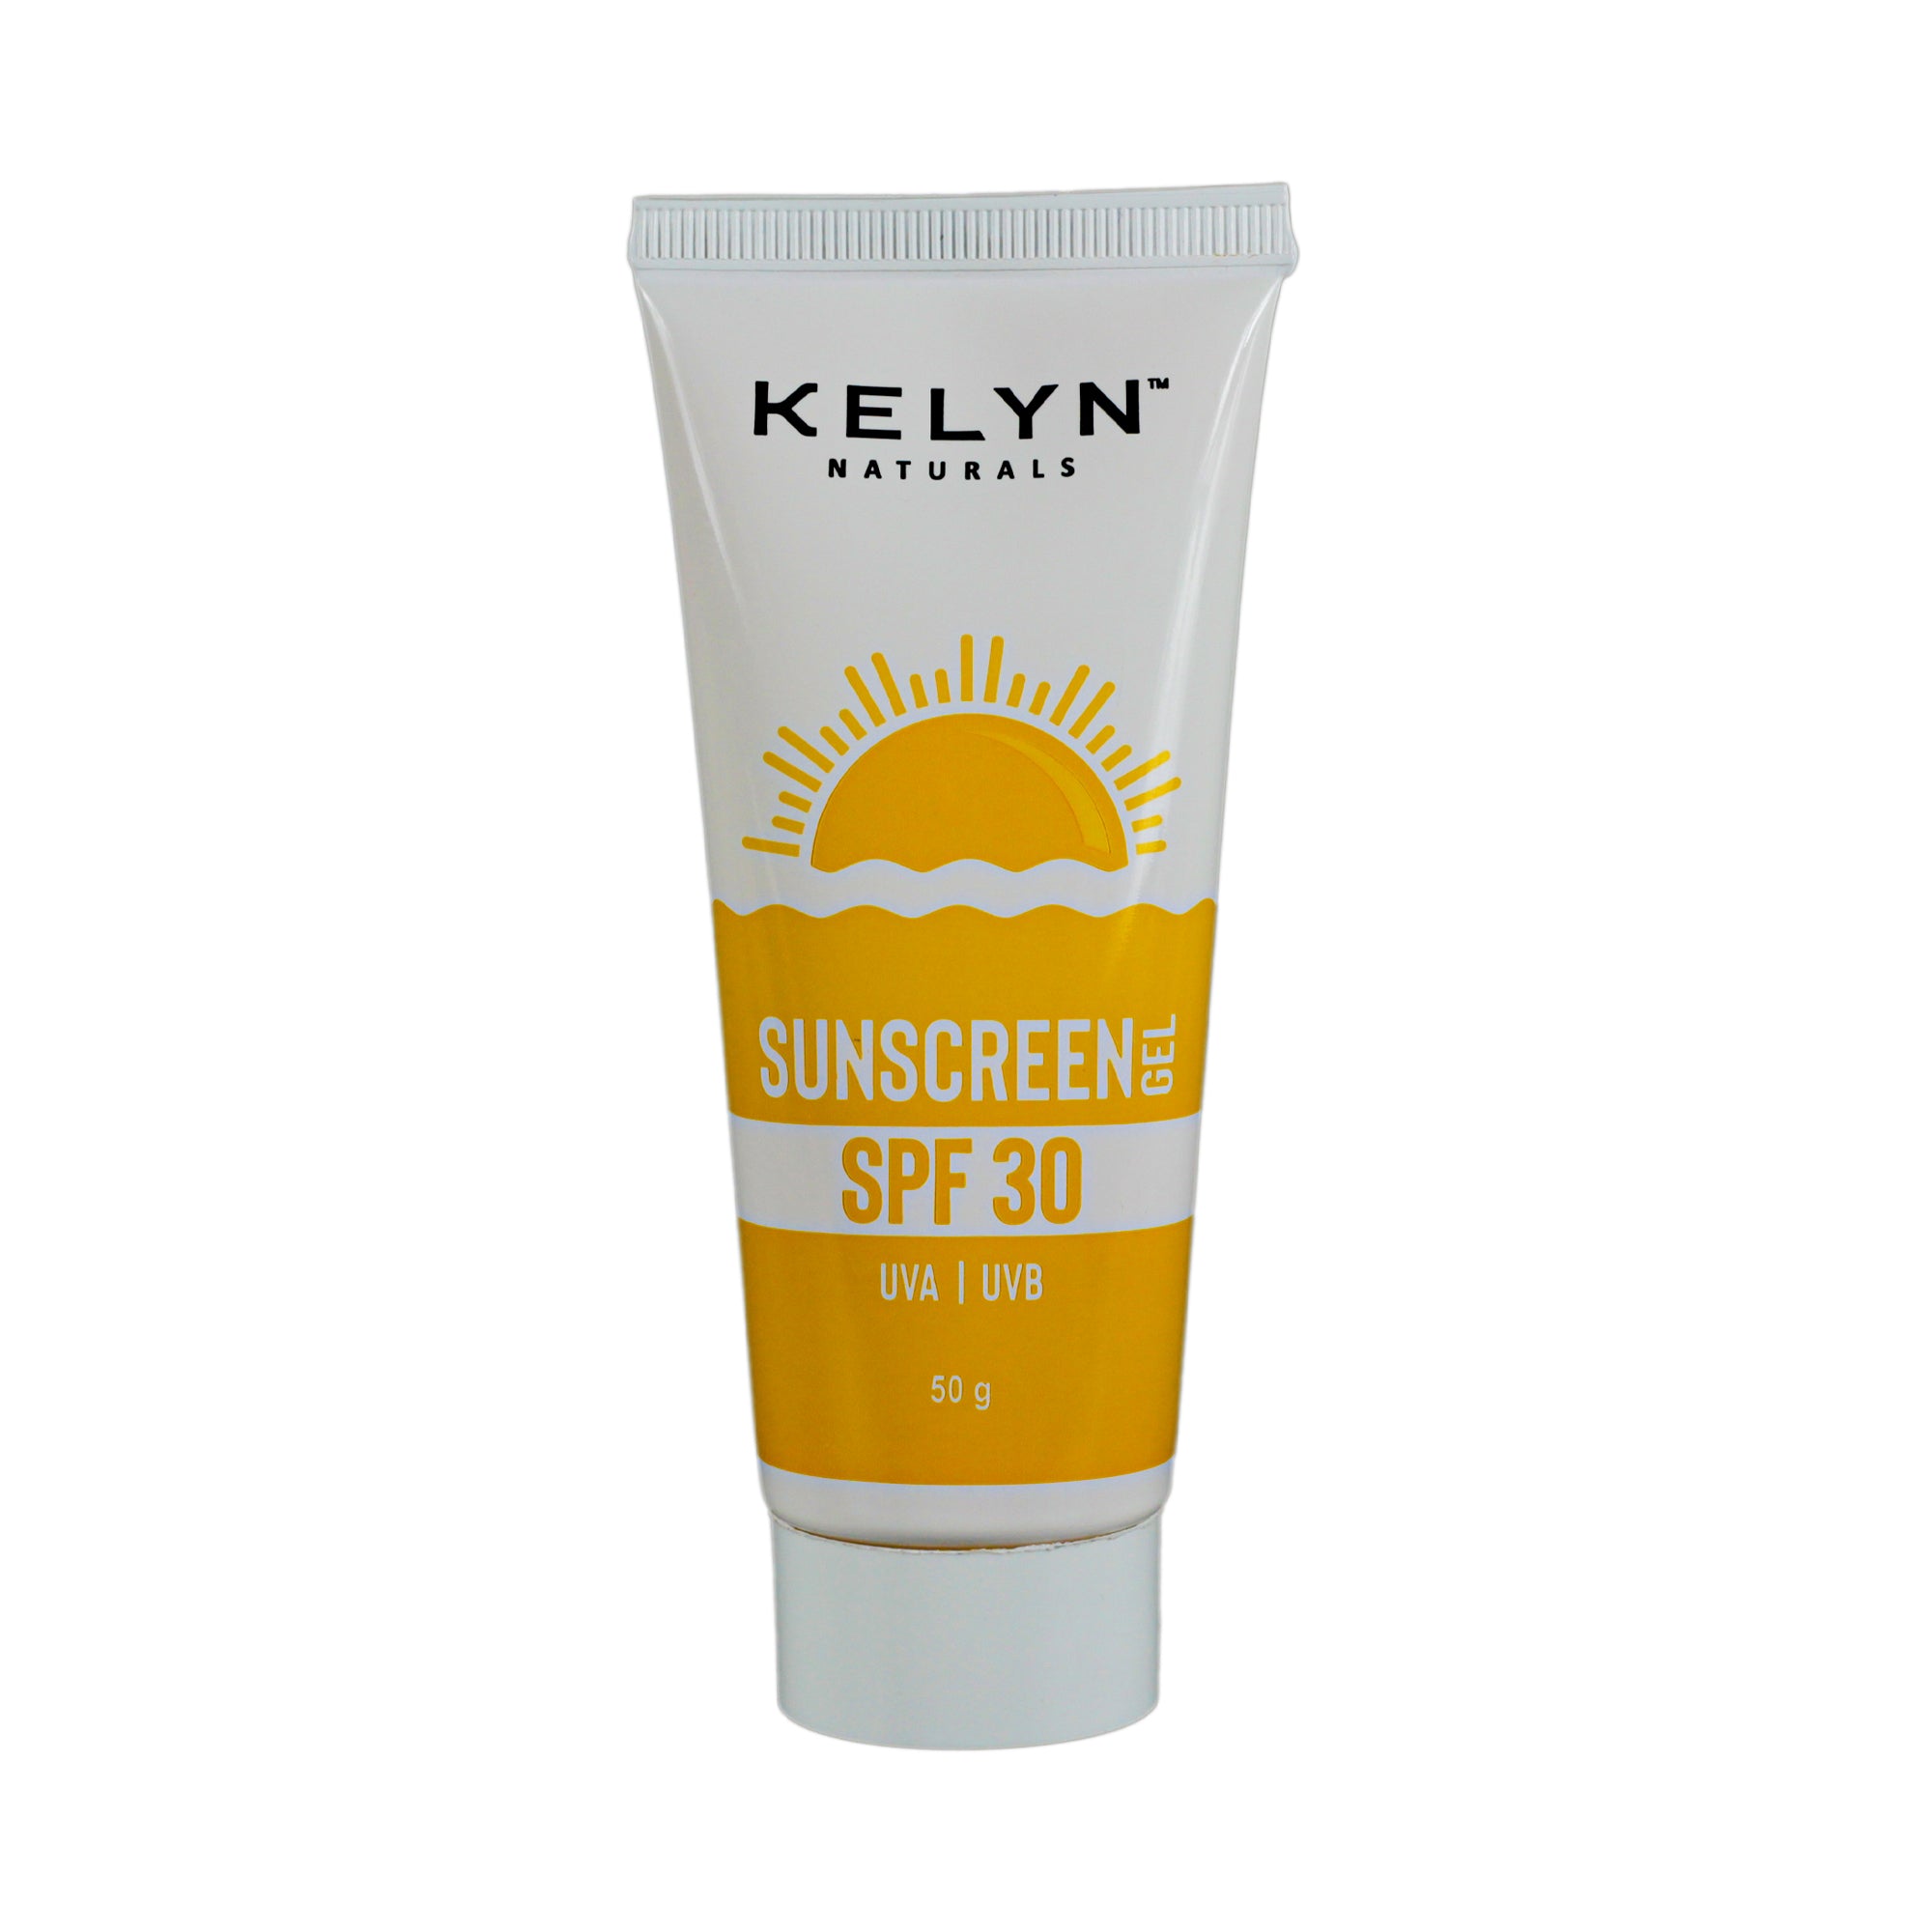 Sunscreen SPF 30 Gel, 50g